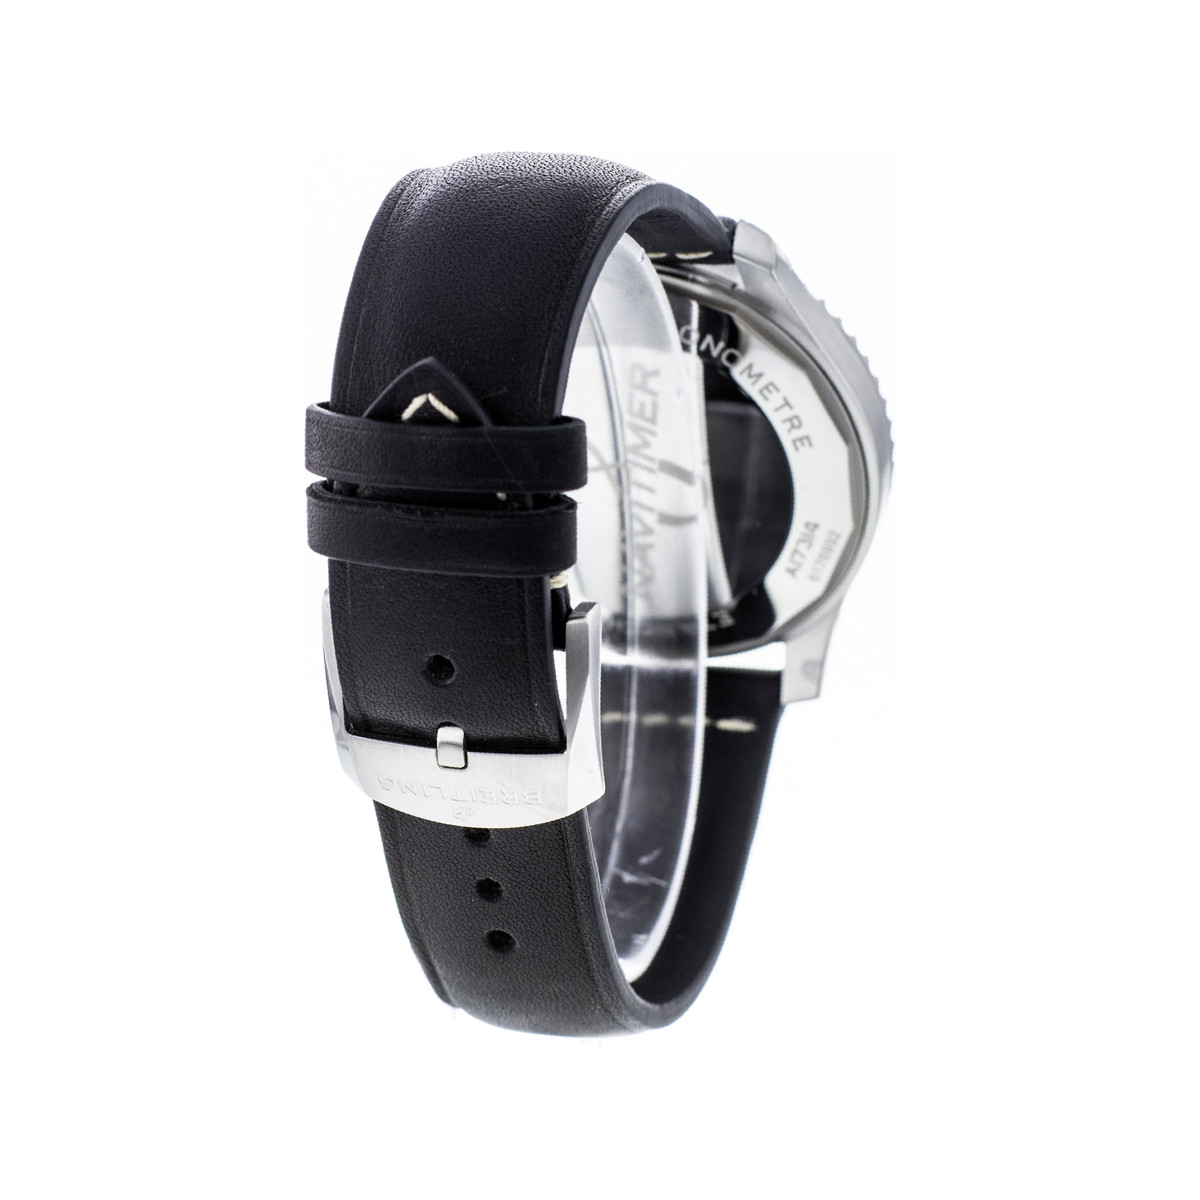 Montre d'occasion Breitling Navitimer homme automatique acier bracelet cuir noir - vue 3